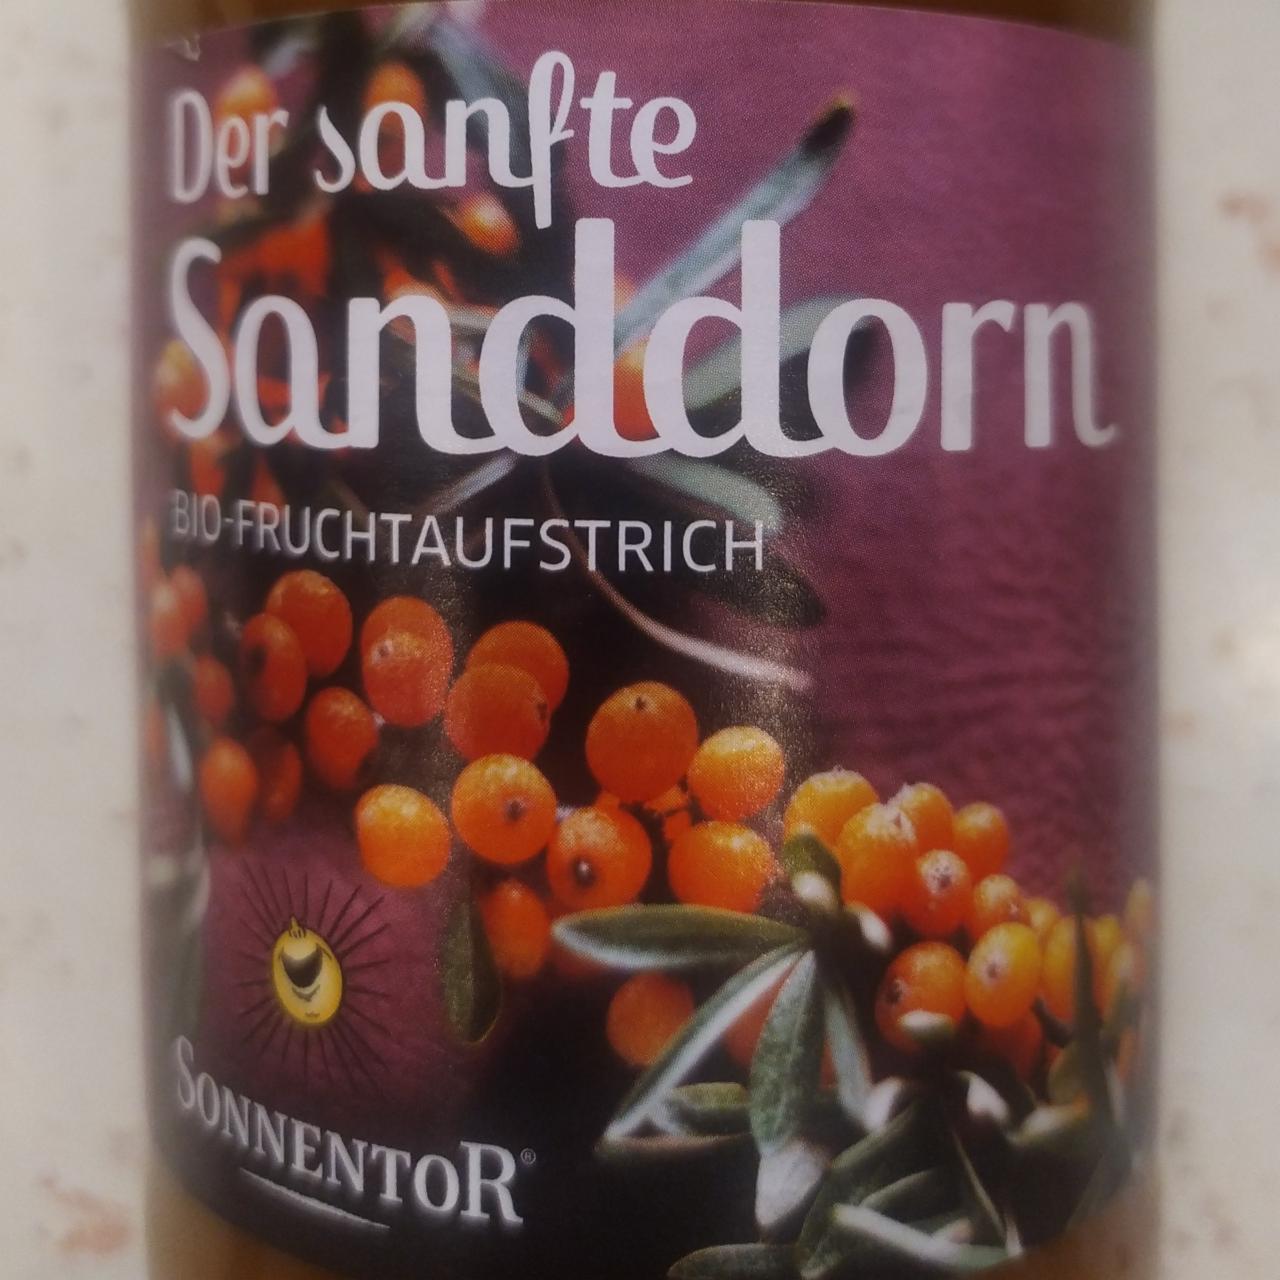 Fotografie - Der sanfte Sanddorn, Fruchtaufstrich bio Sonnentor